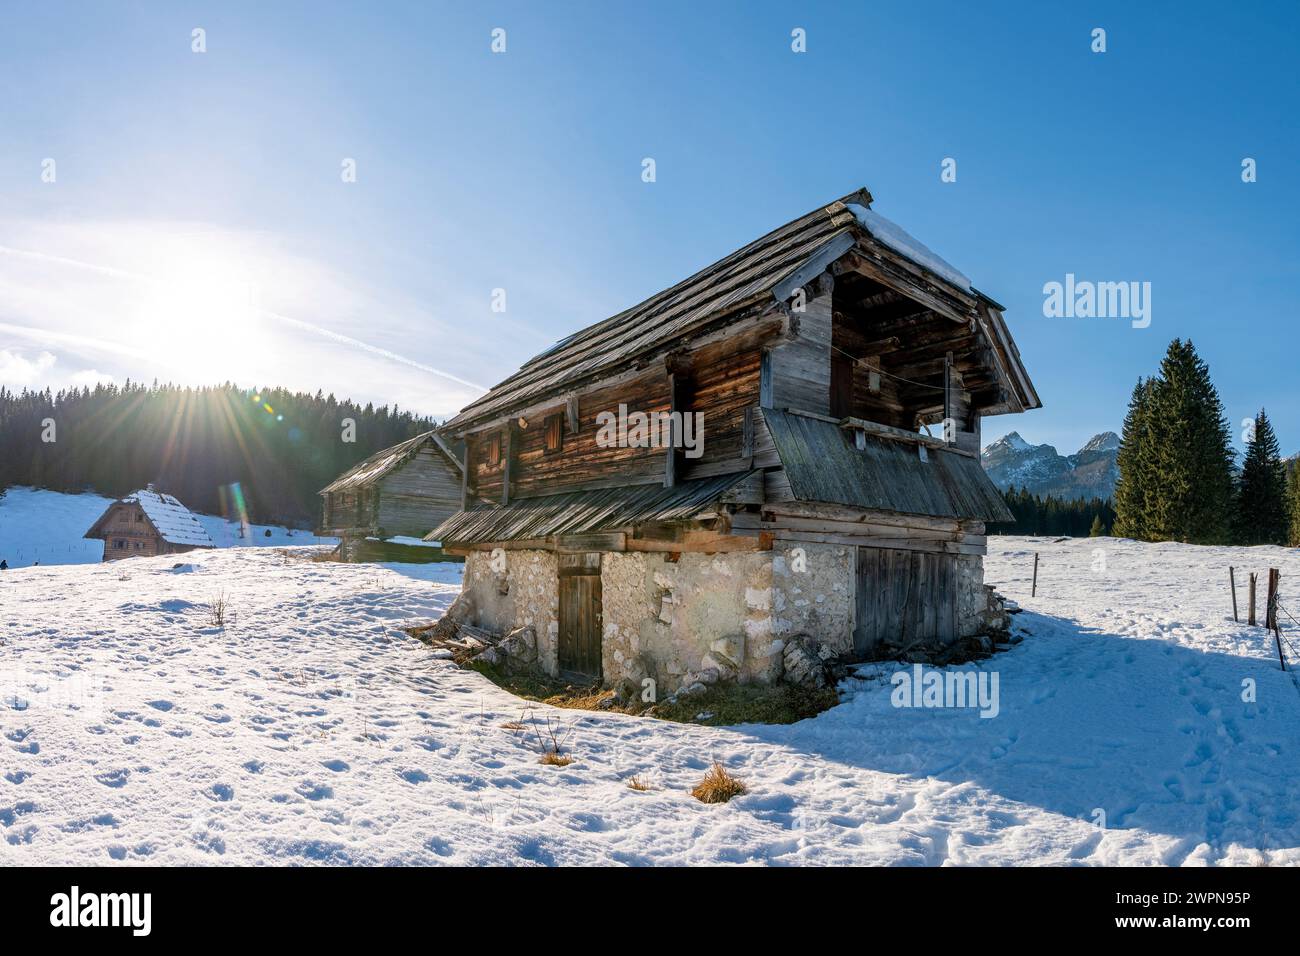 Pokljuka è un altopiano alpino nel nord-ovest della Slovenia. Si trova nel Parco Nazionale del Triglav nelle Alpi Giulie a circa 1300 m sul livello del mare. Foto Stock